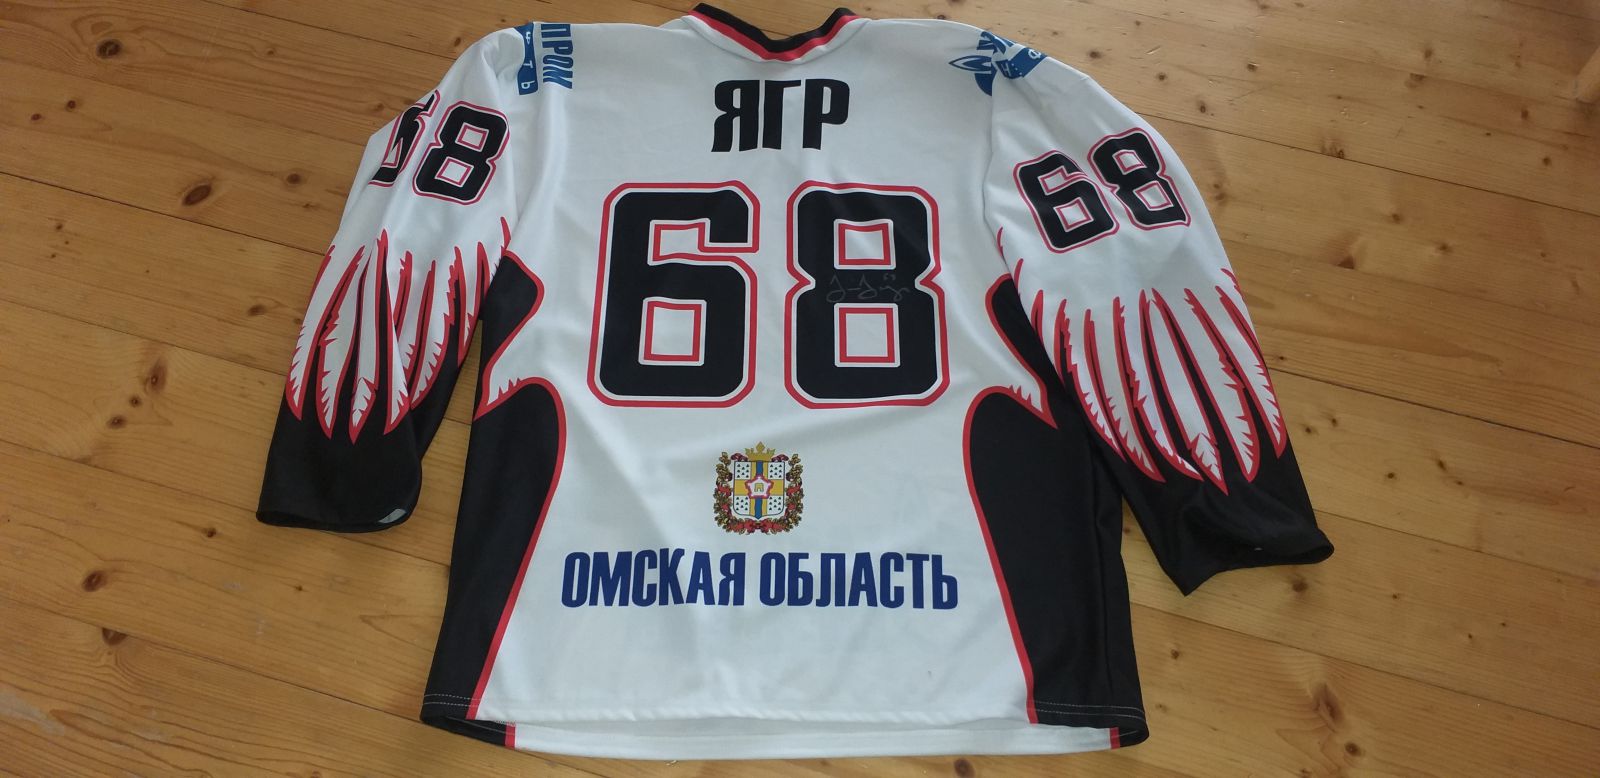 Oficiální replika dresu  Jágra z Avangardu Omsk photo